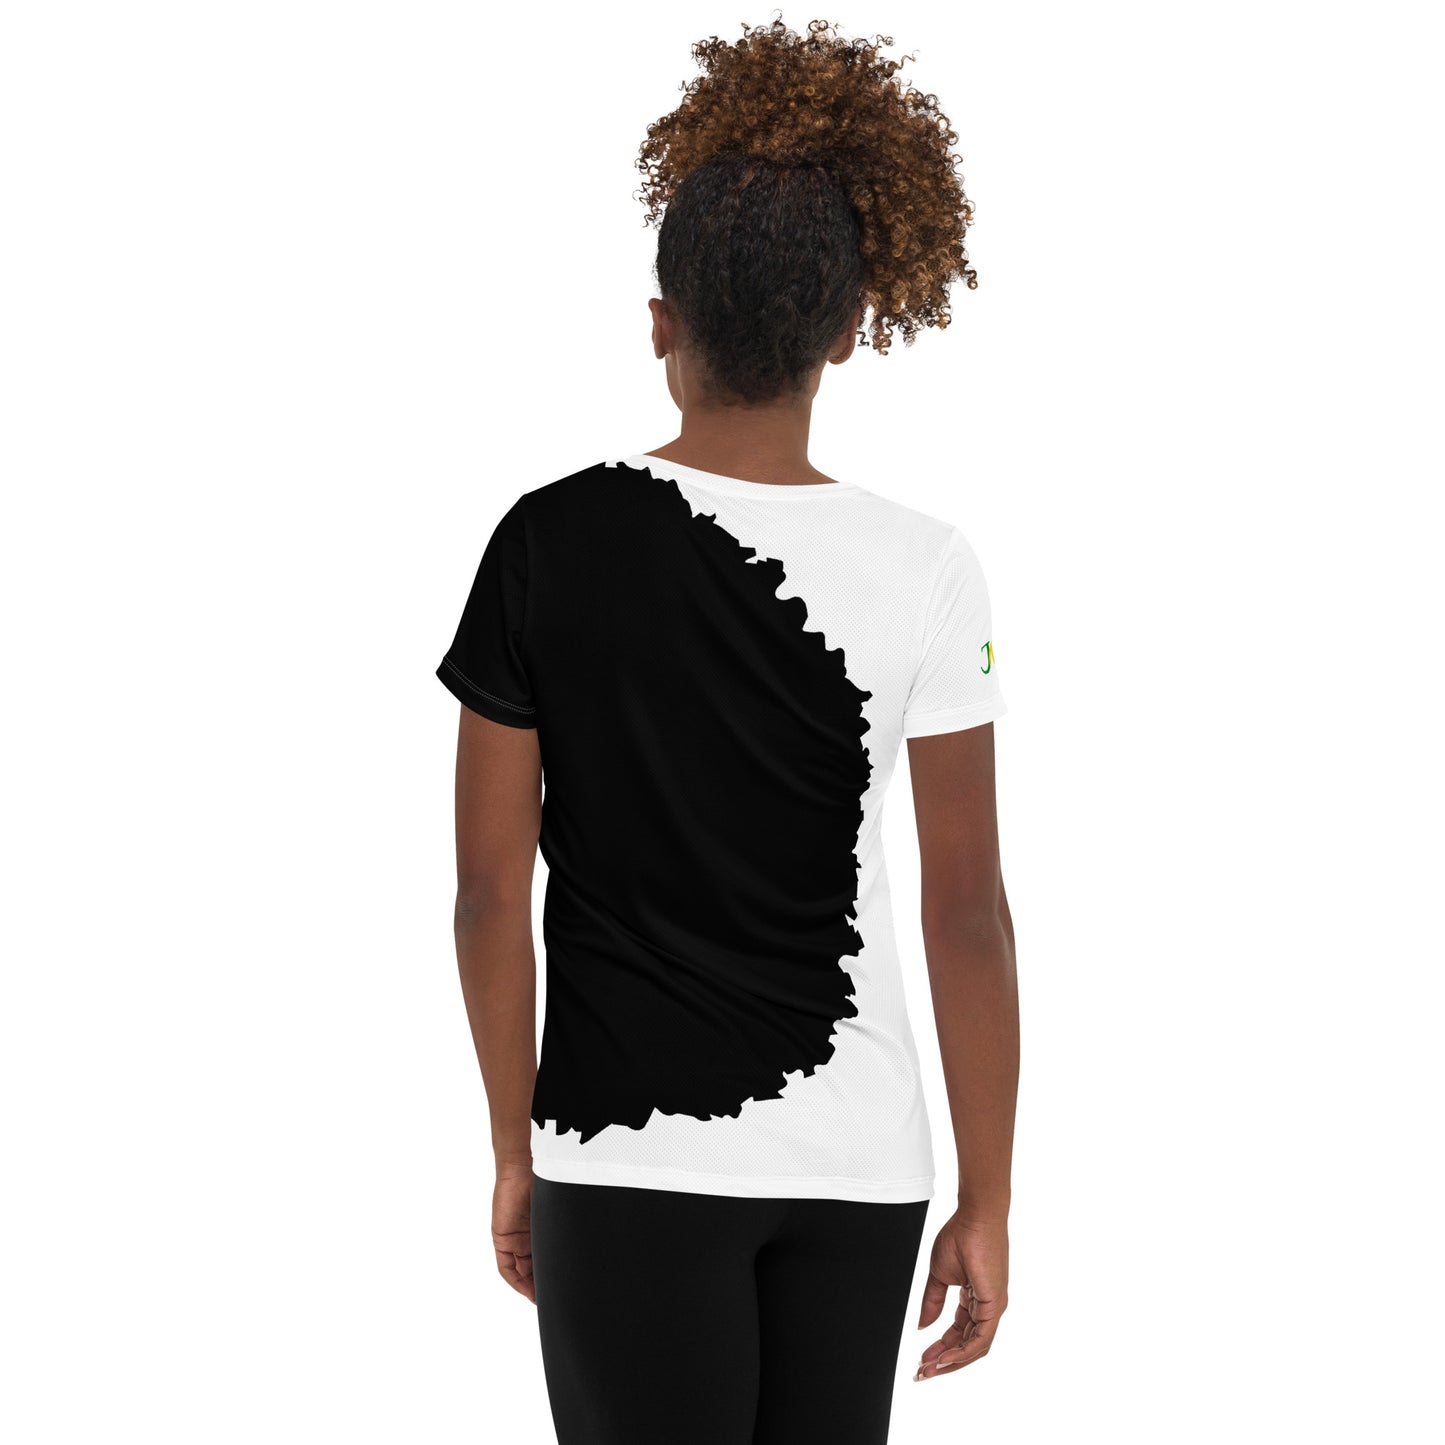 T-shirt afro femme - Blakawoman